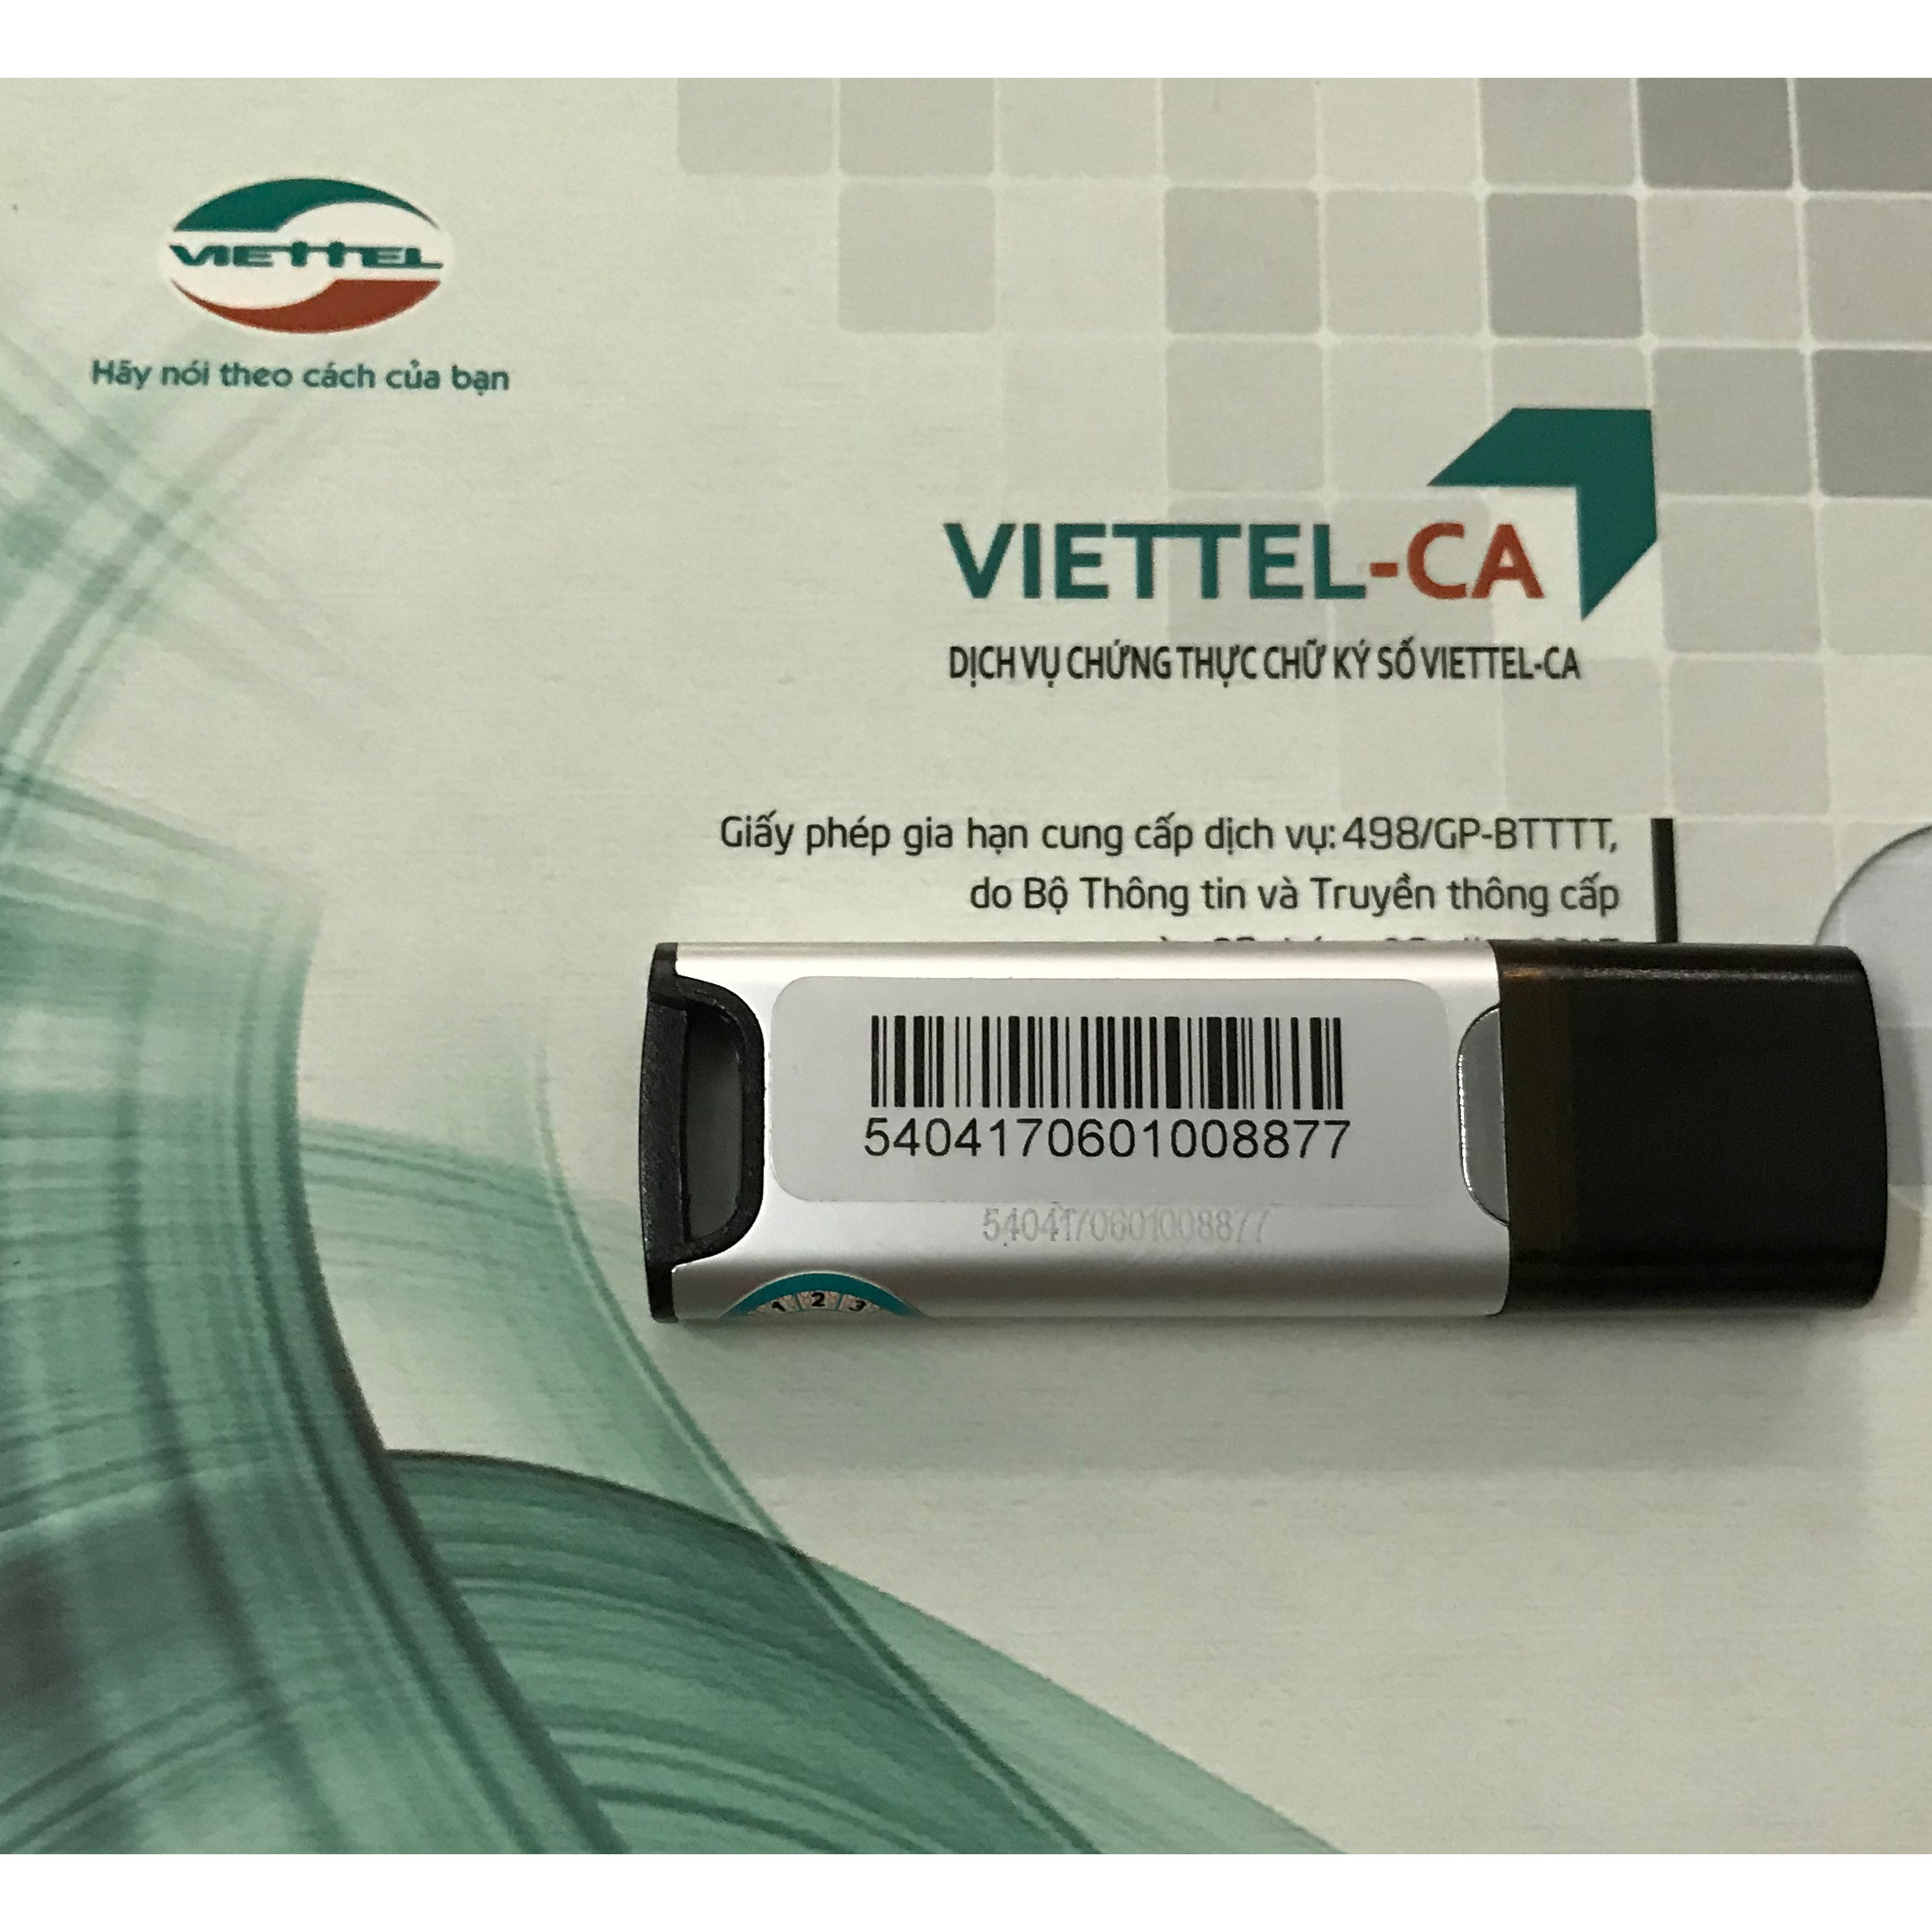 Mua mới chữ ký số USB TOKEN Viettel - Gói đăng ký mới 1 năm chữ ký số Viettel-CA - CHÍNH HÃNG 100%